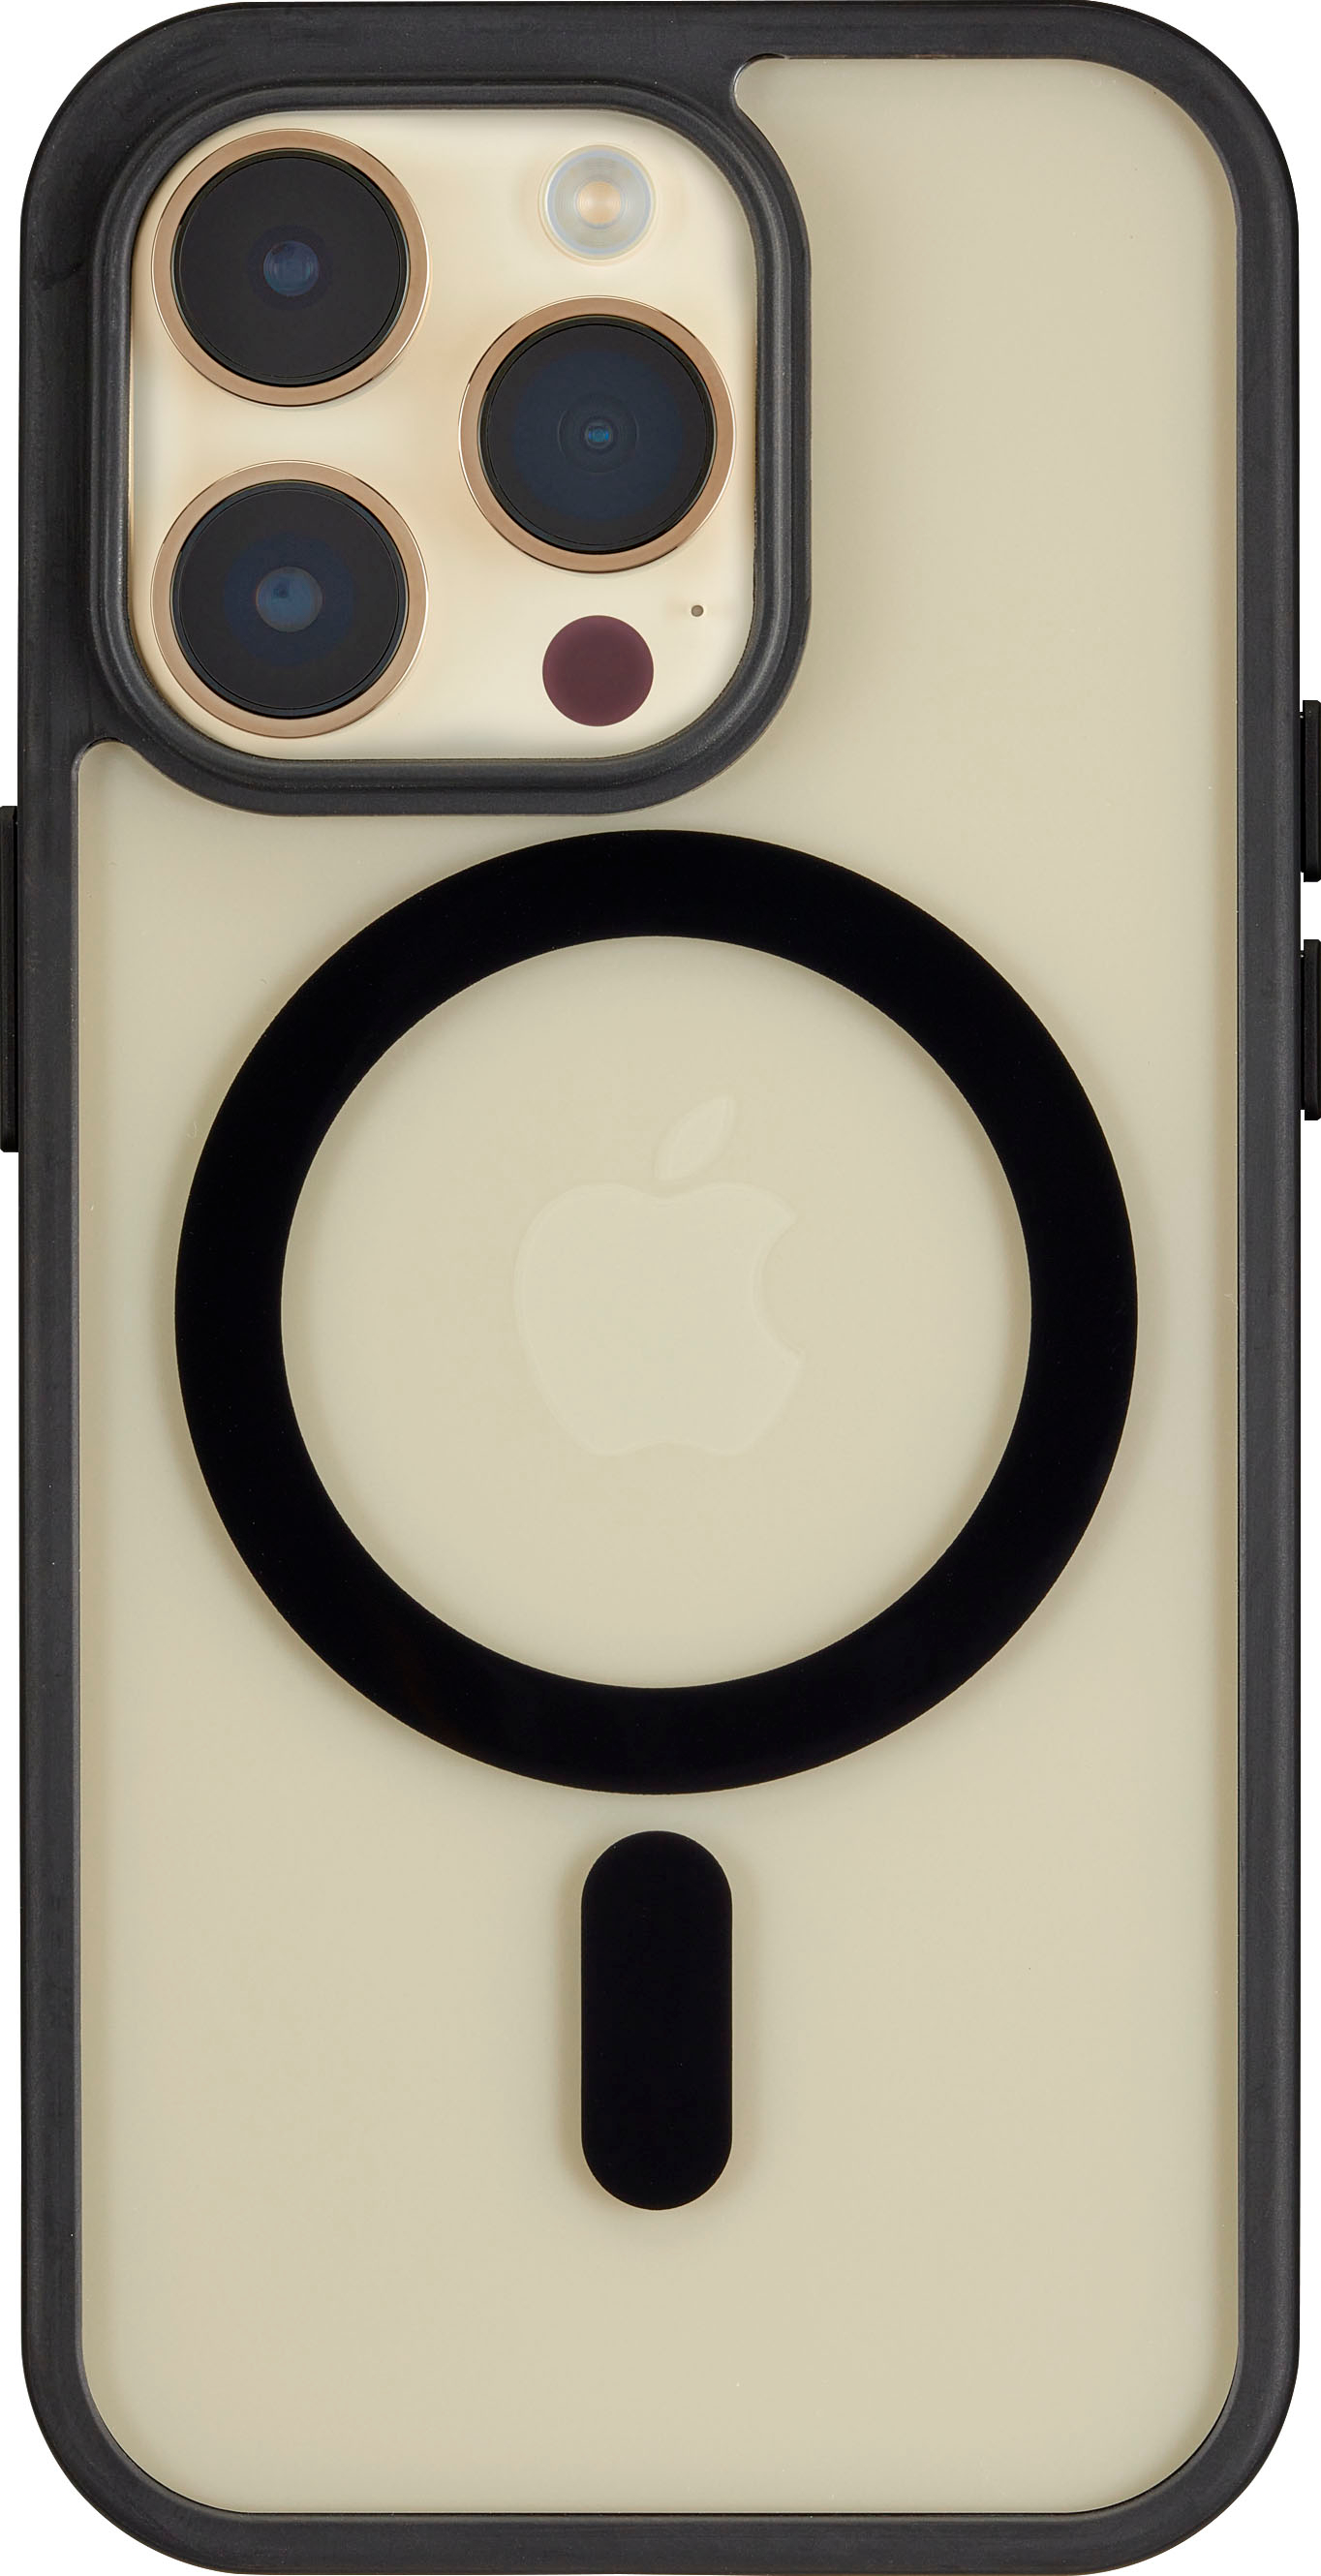 530 IPhone cases! ideas  iphone cases, iphone, phone cases